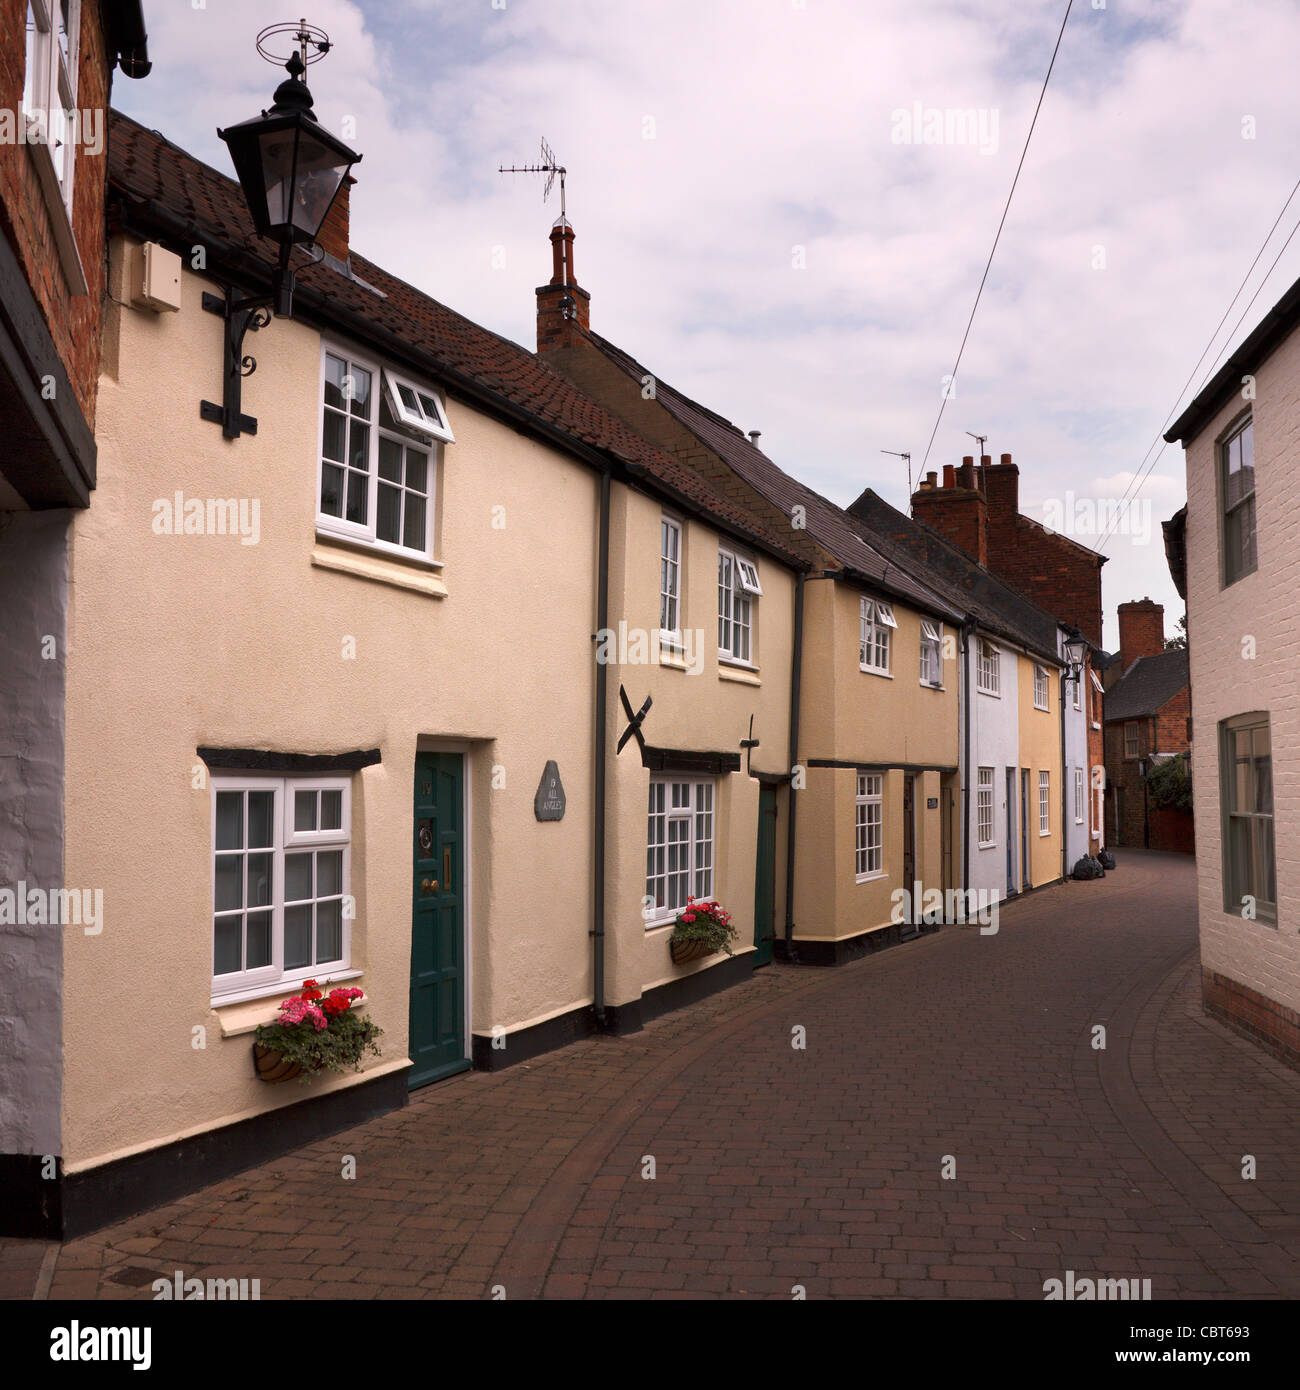 Terrassenförmig angelegten Reihe von schönen alten englischen Cottages in schmalen Seitenstraße, gemalt Deans Street, Oakham, Rutland, England, UK Stockfoto